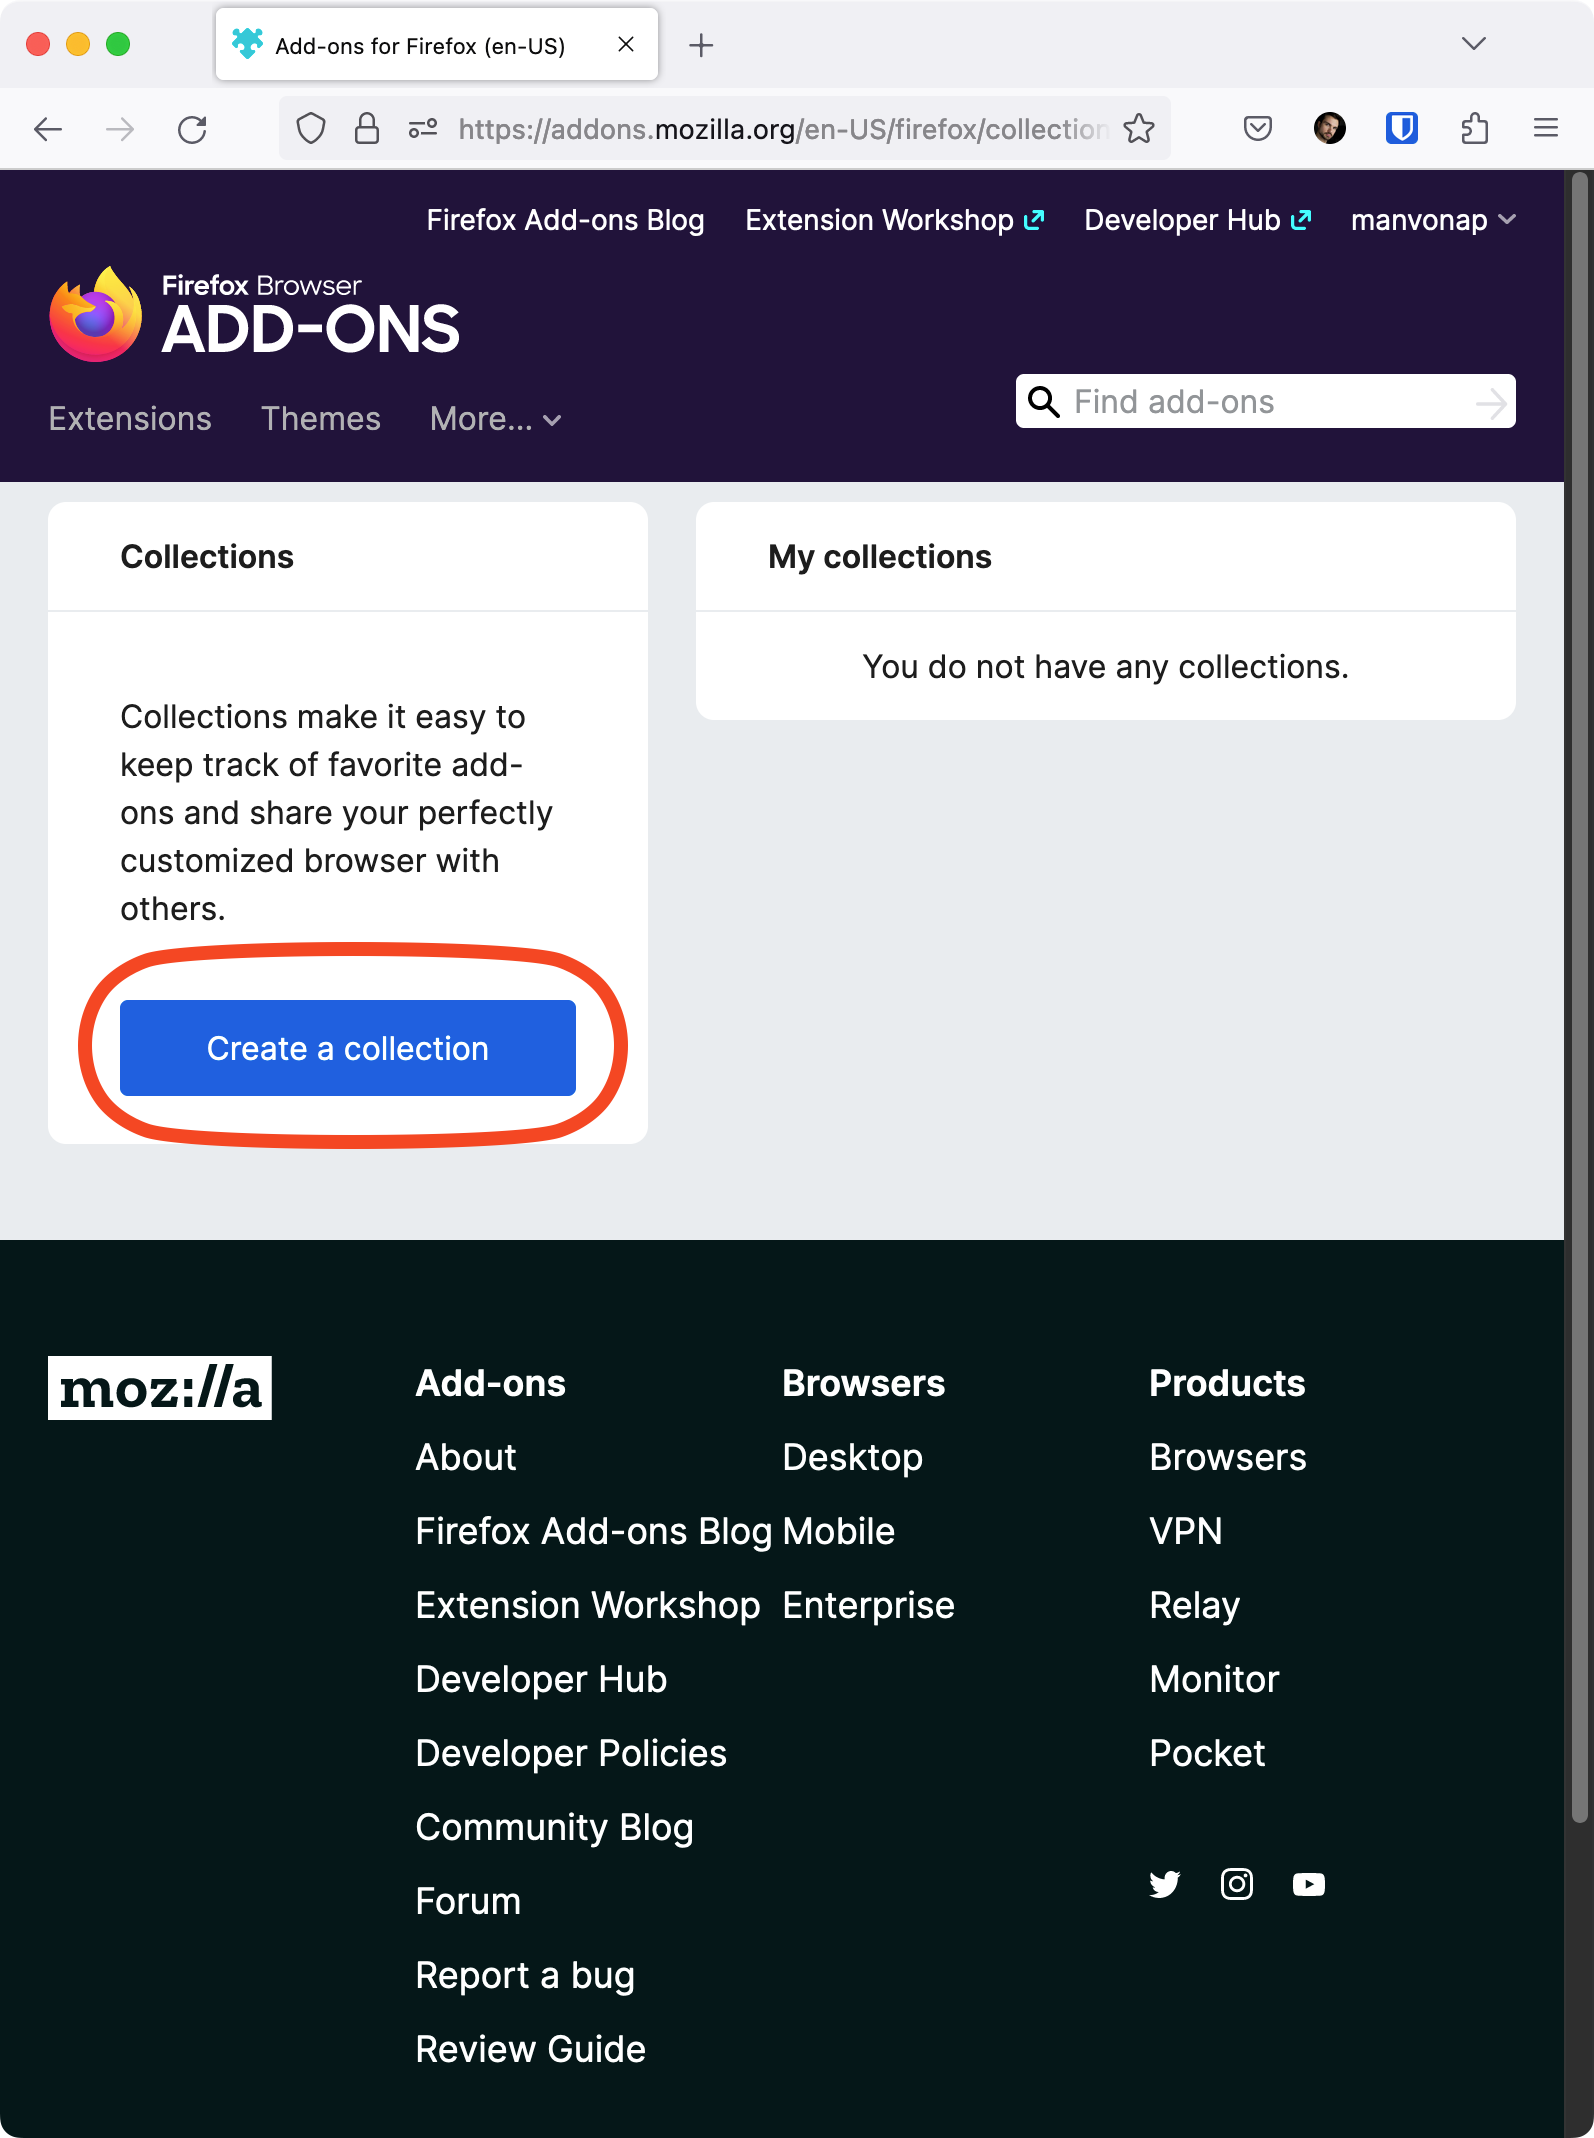 Captura de tela do site Coleções de complementos do Firefox com o botão Criar uma coleção realçado